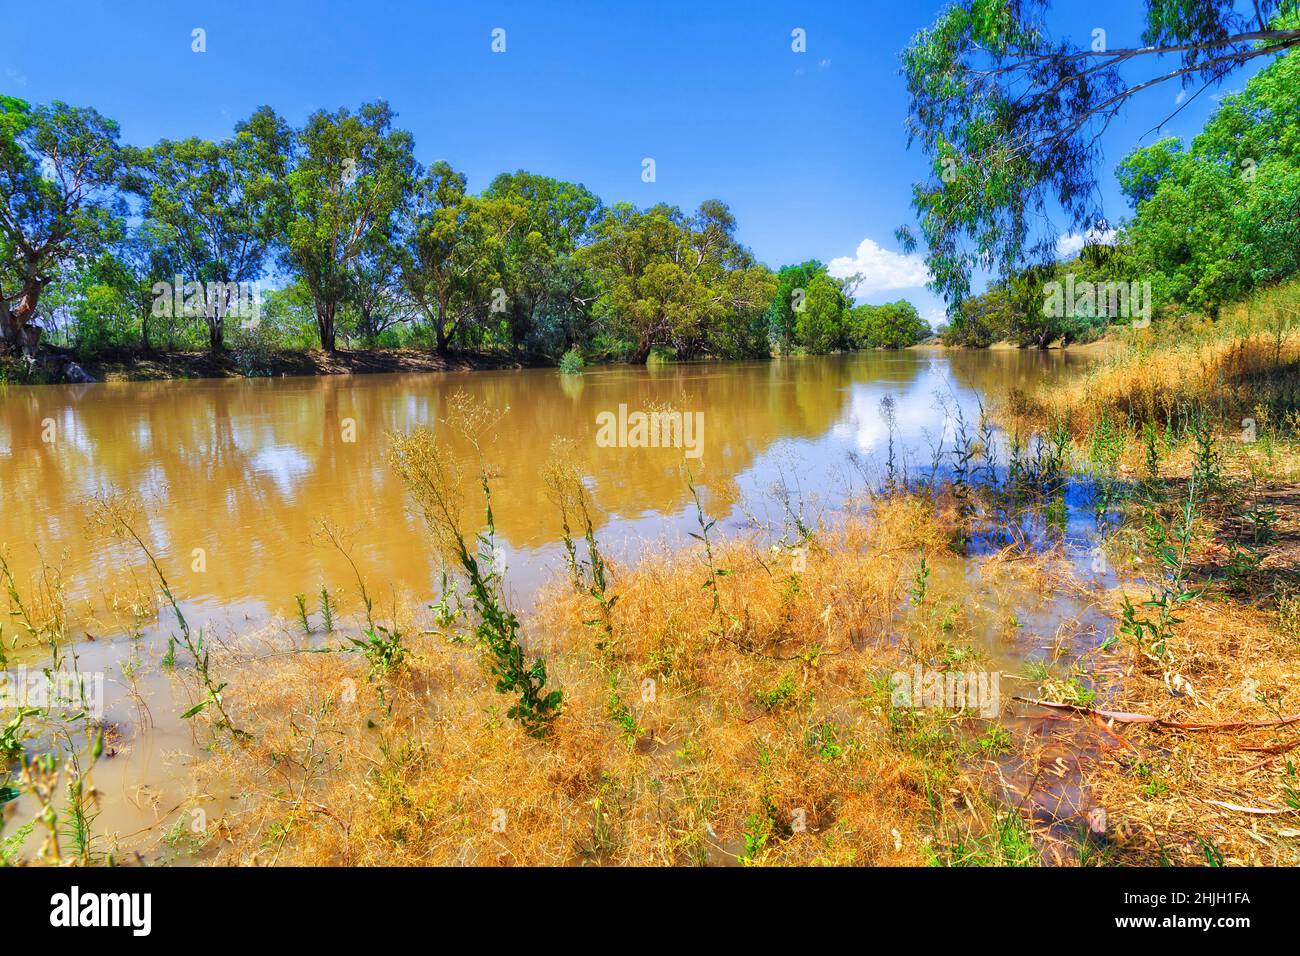 Darling River in Wilcannia città dell'entroterra australiano - paesaggio di corsi d'acqua dal porto di Baker Park. Foto Stock